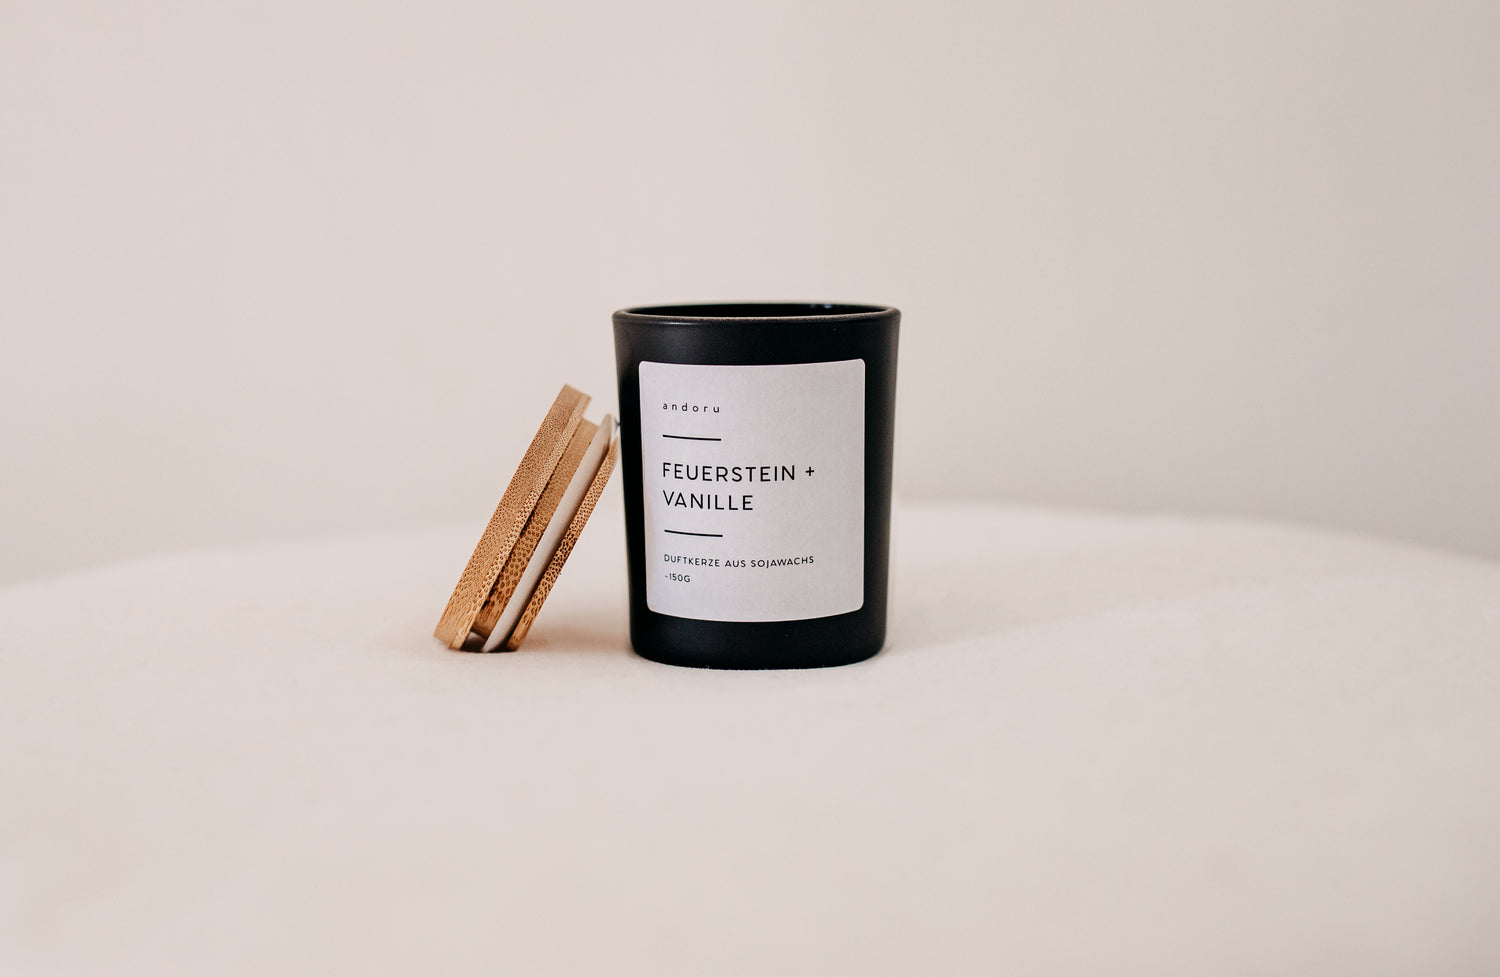 Feuerstein + Vanille - andoru Duftkerze im schwarzen Glas mit Deckel aus Holz